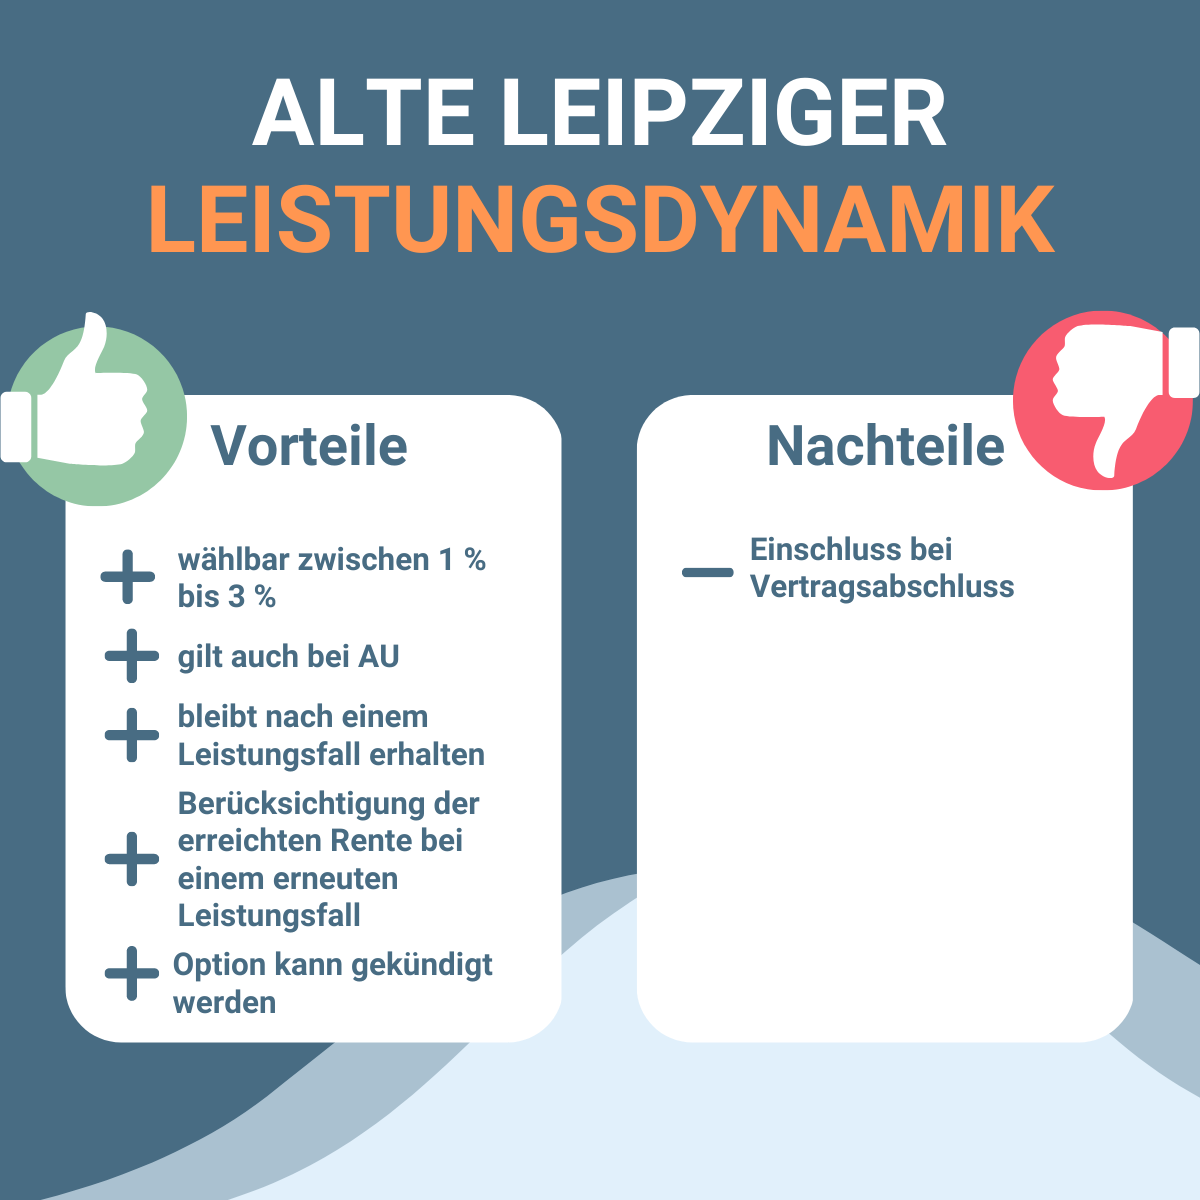 Infografik zu Vorteilen und Nachteilen Leistungsdynamik des BU-Tarifs BV10 der Alte Leipziger.